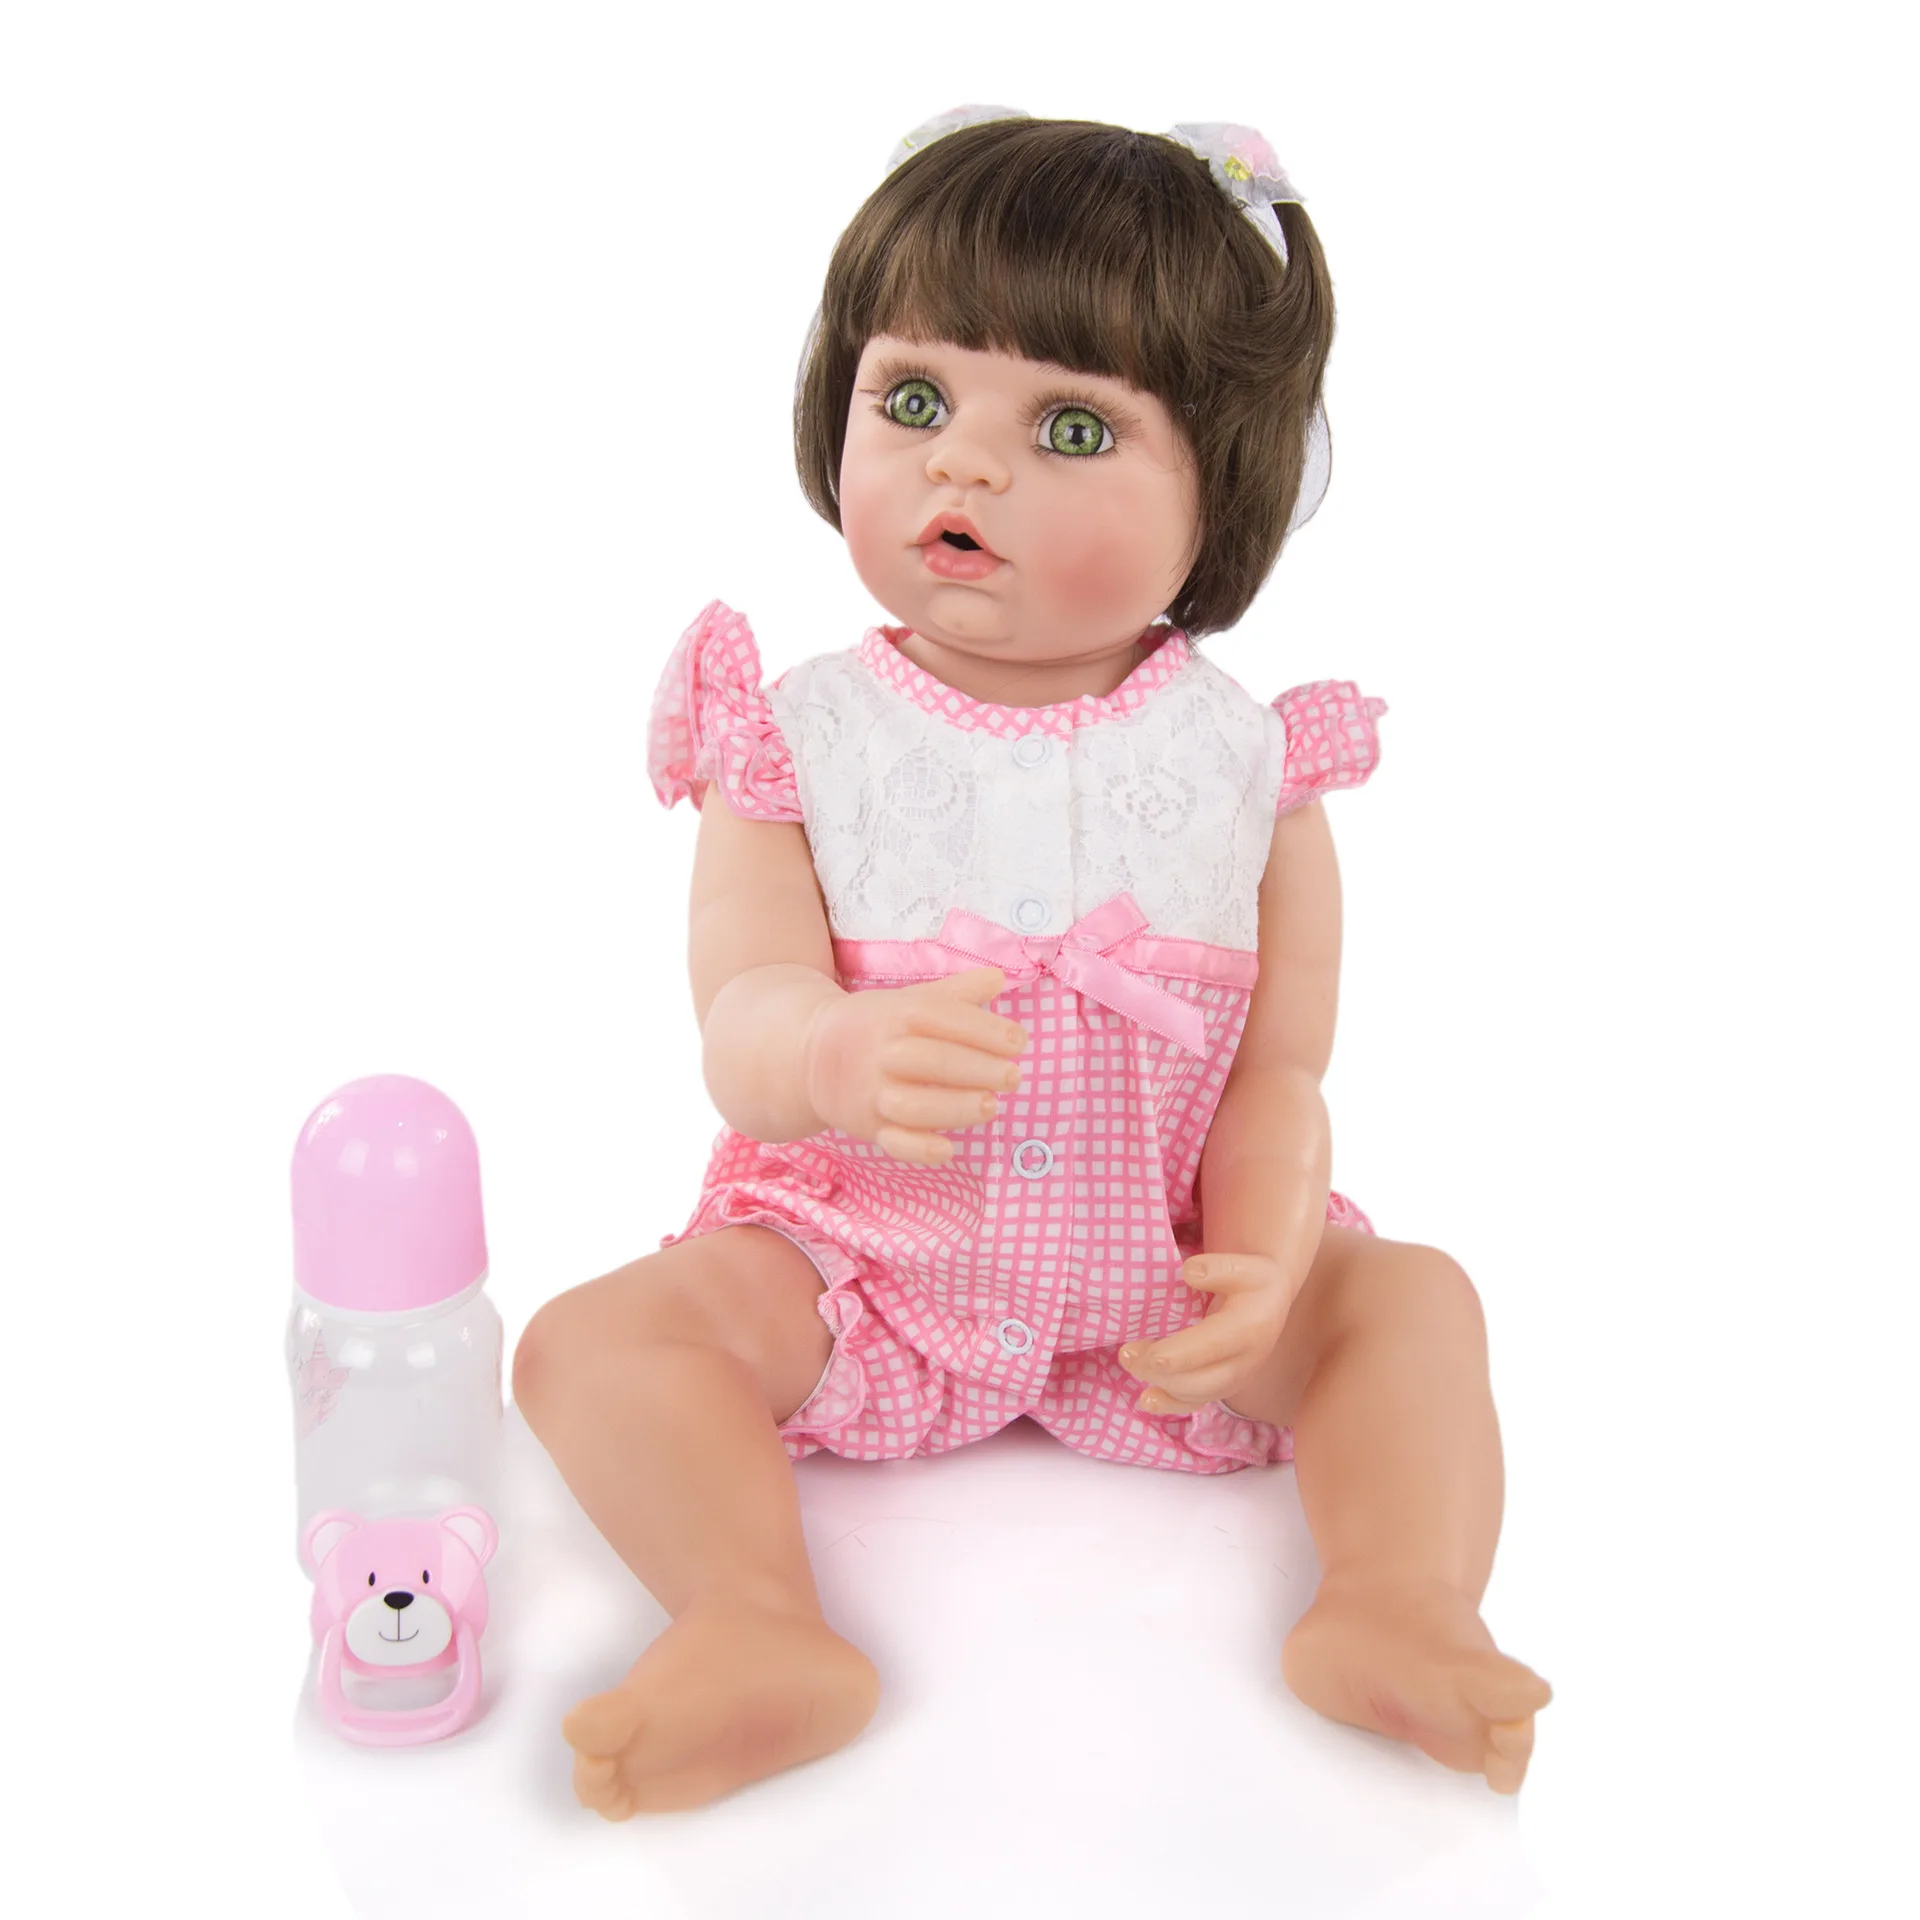 

Realistic Reborn Dolls KEIUMI 55cm Full Body Silicone Baby Doll Lifelike Newborn Reborn Dolls Baby Bath Original Doll Toys Kids